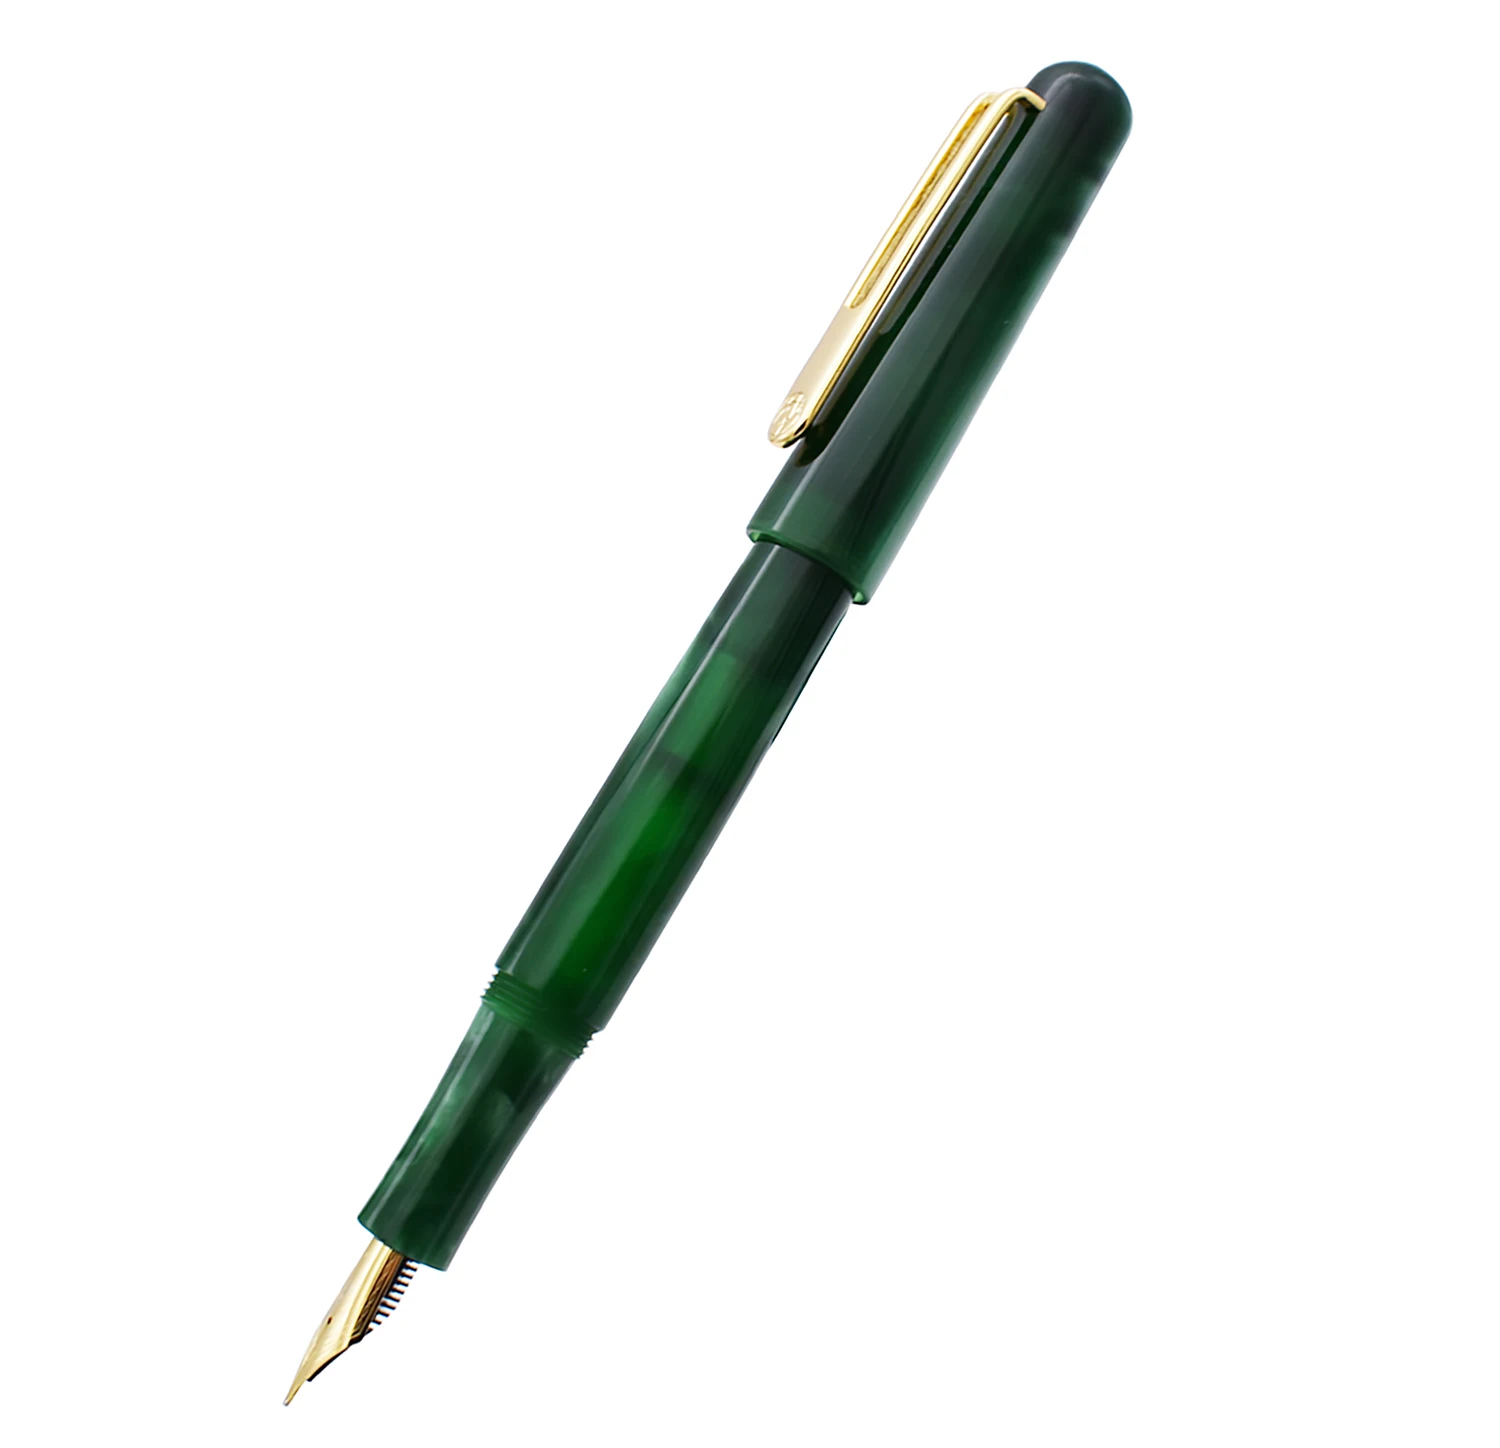 ПИКАССО целлулоид перьевая ручка Pimio EtSandy Аврора зеленый PS-975 иридия F чернильная ручка Подарочная ручка для Бизнес для офиса - Цвет: Only One Pen